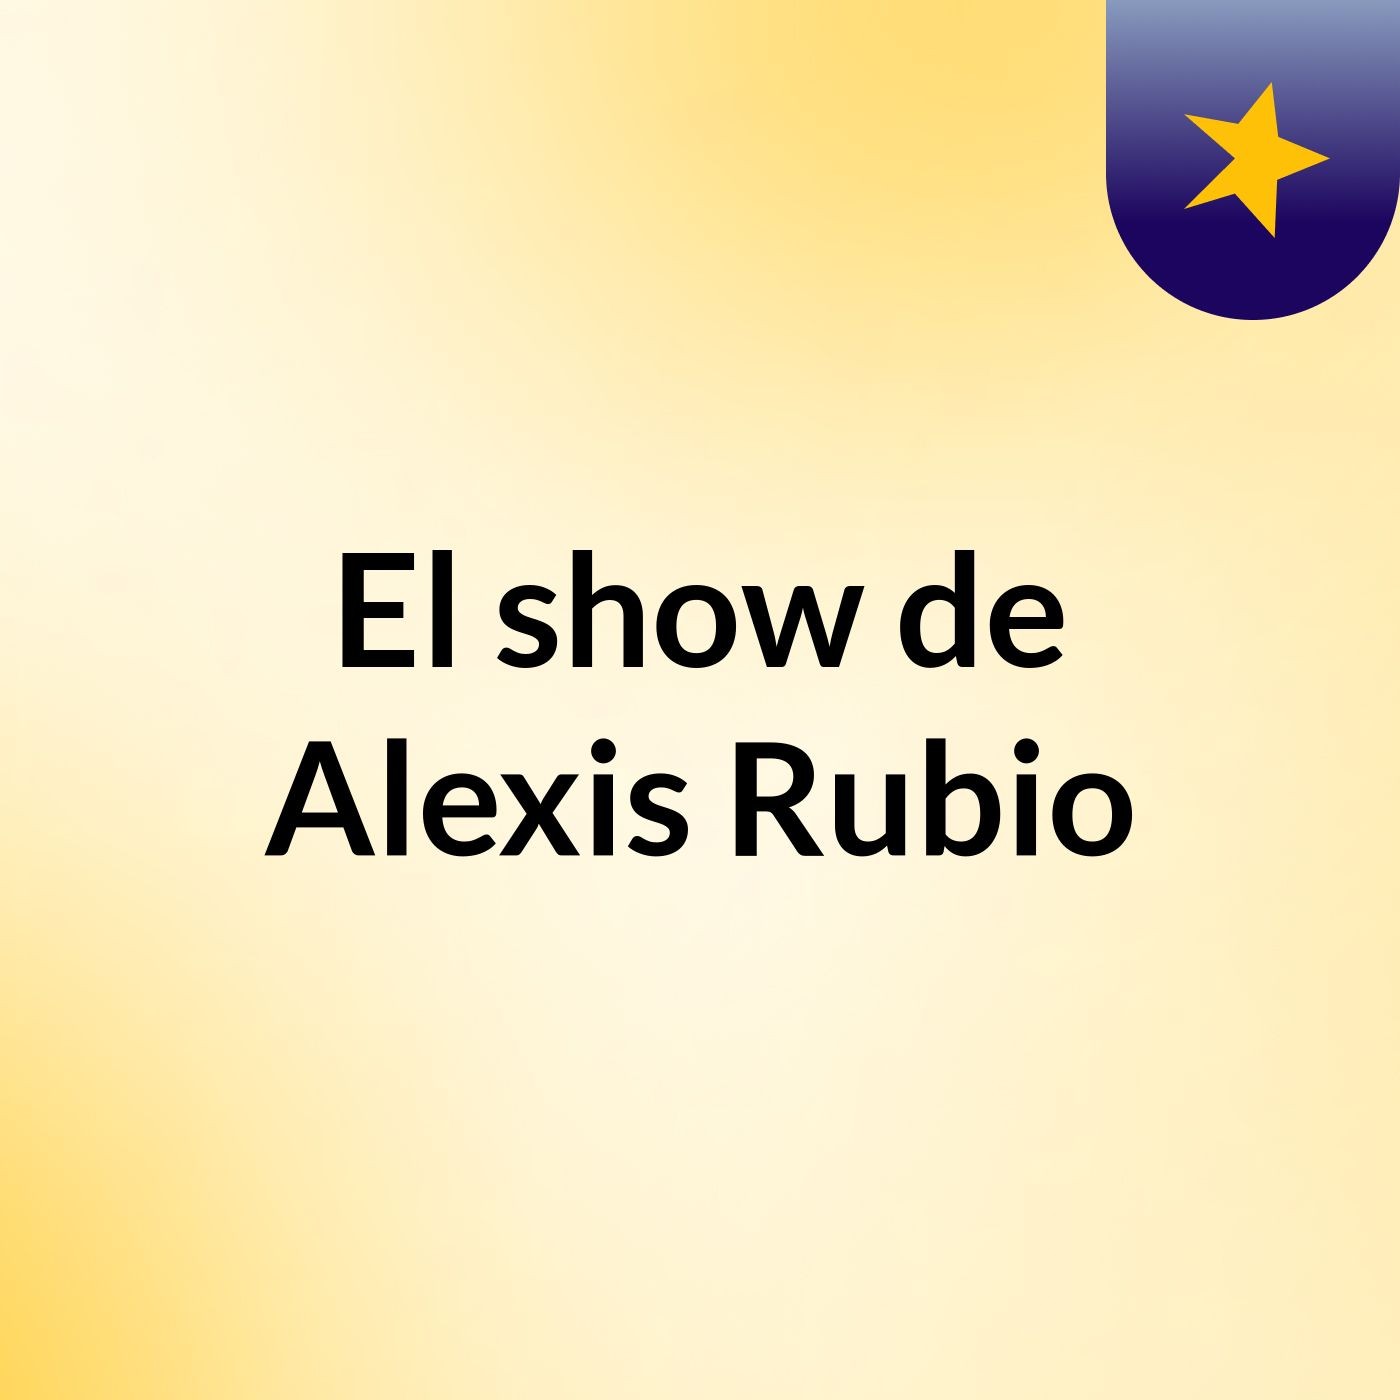 El show de Alexis Rubio